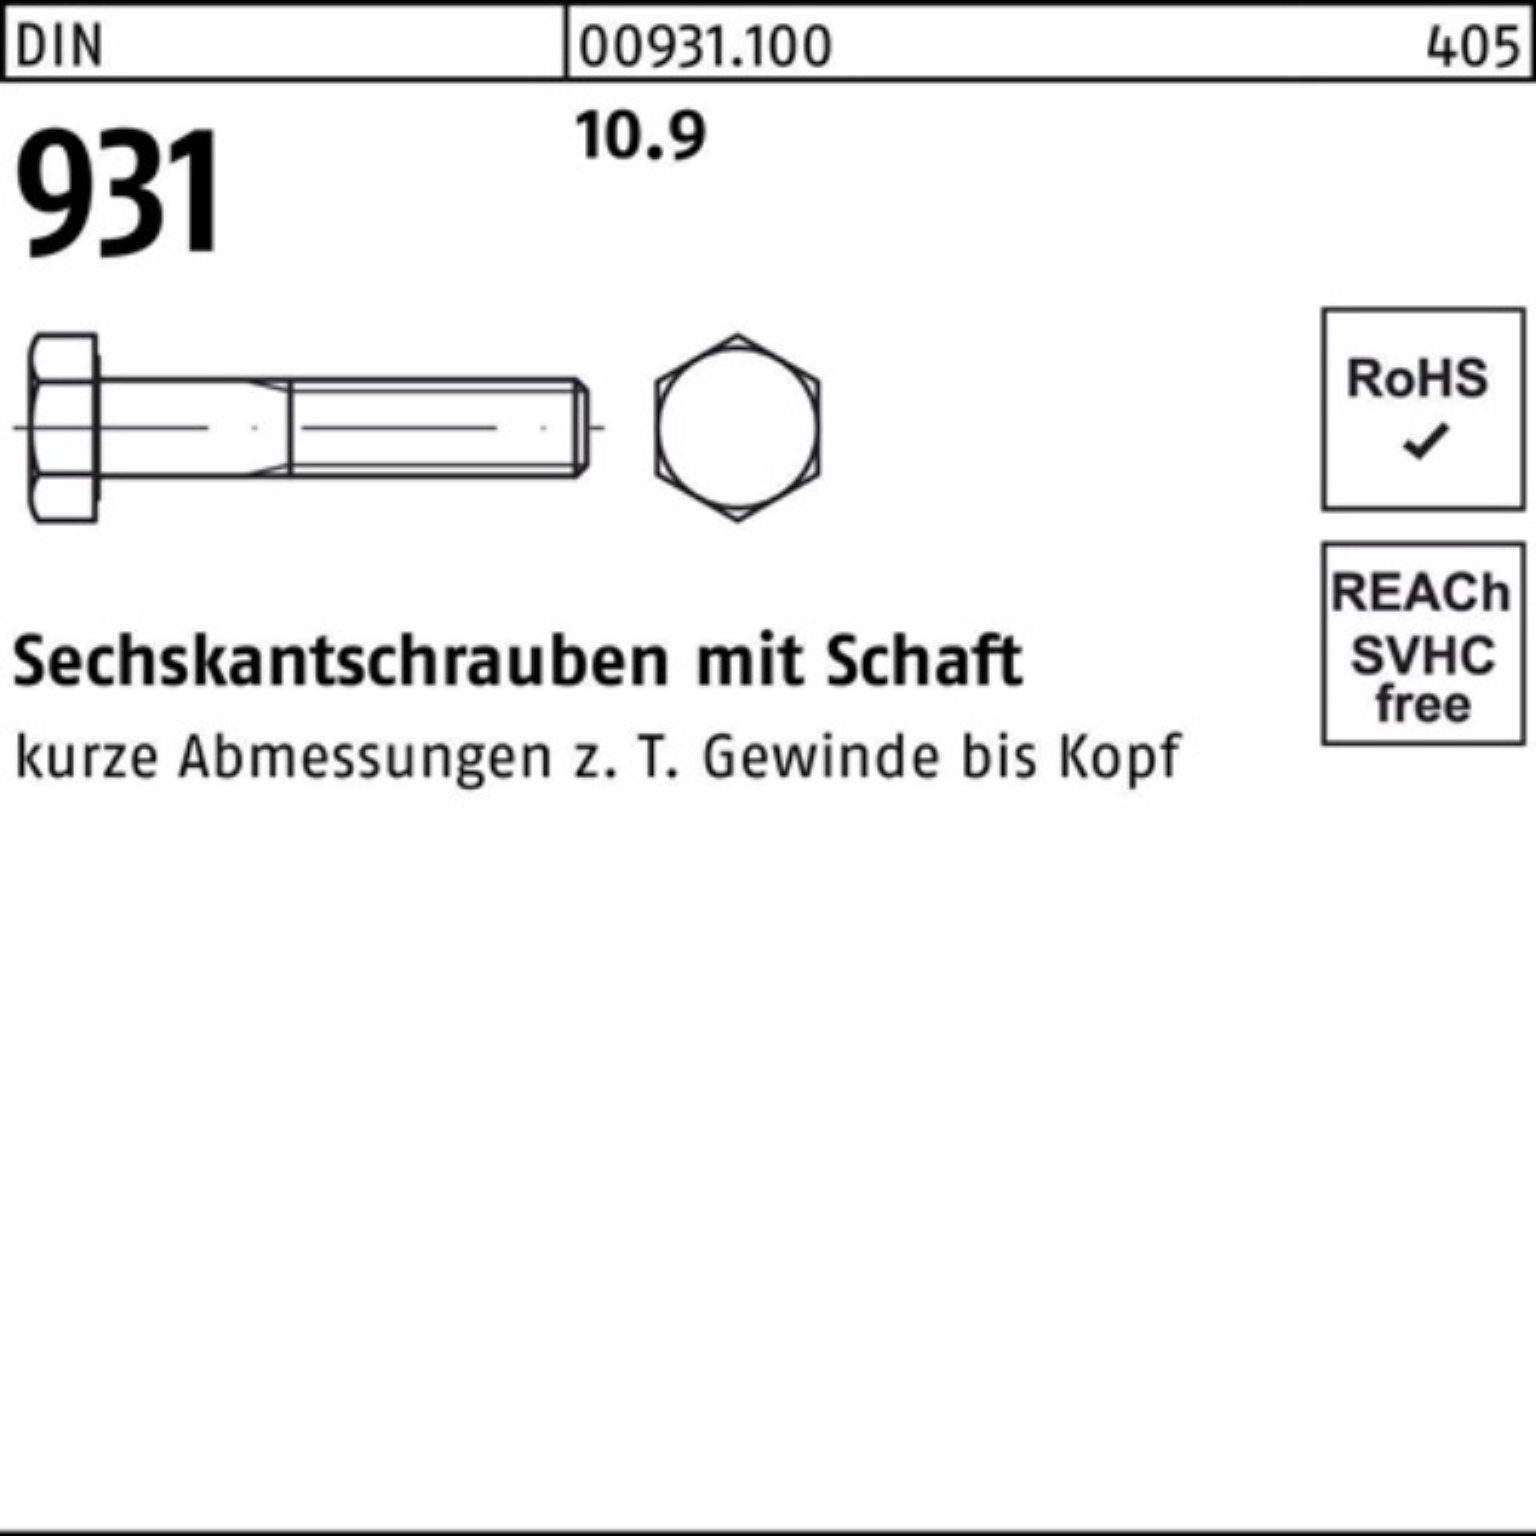 1 DIN Reyher M33x Schaft 10.9 Sechskantschraube 931 Sechskantschraube Pack 220 Stück DIN 100er